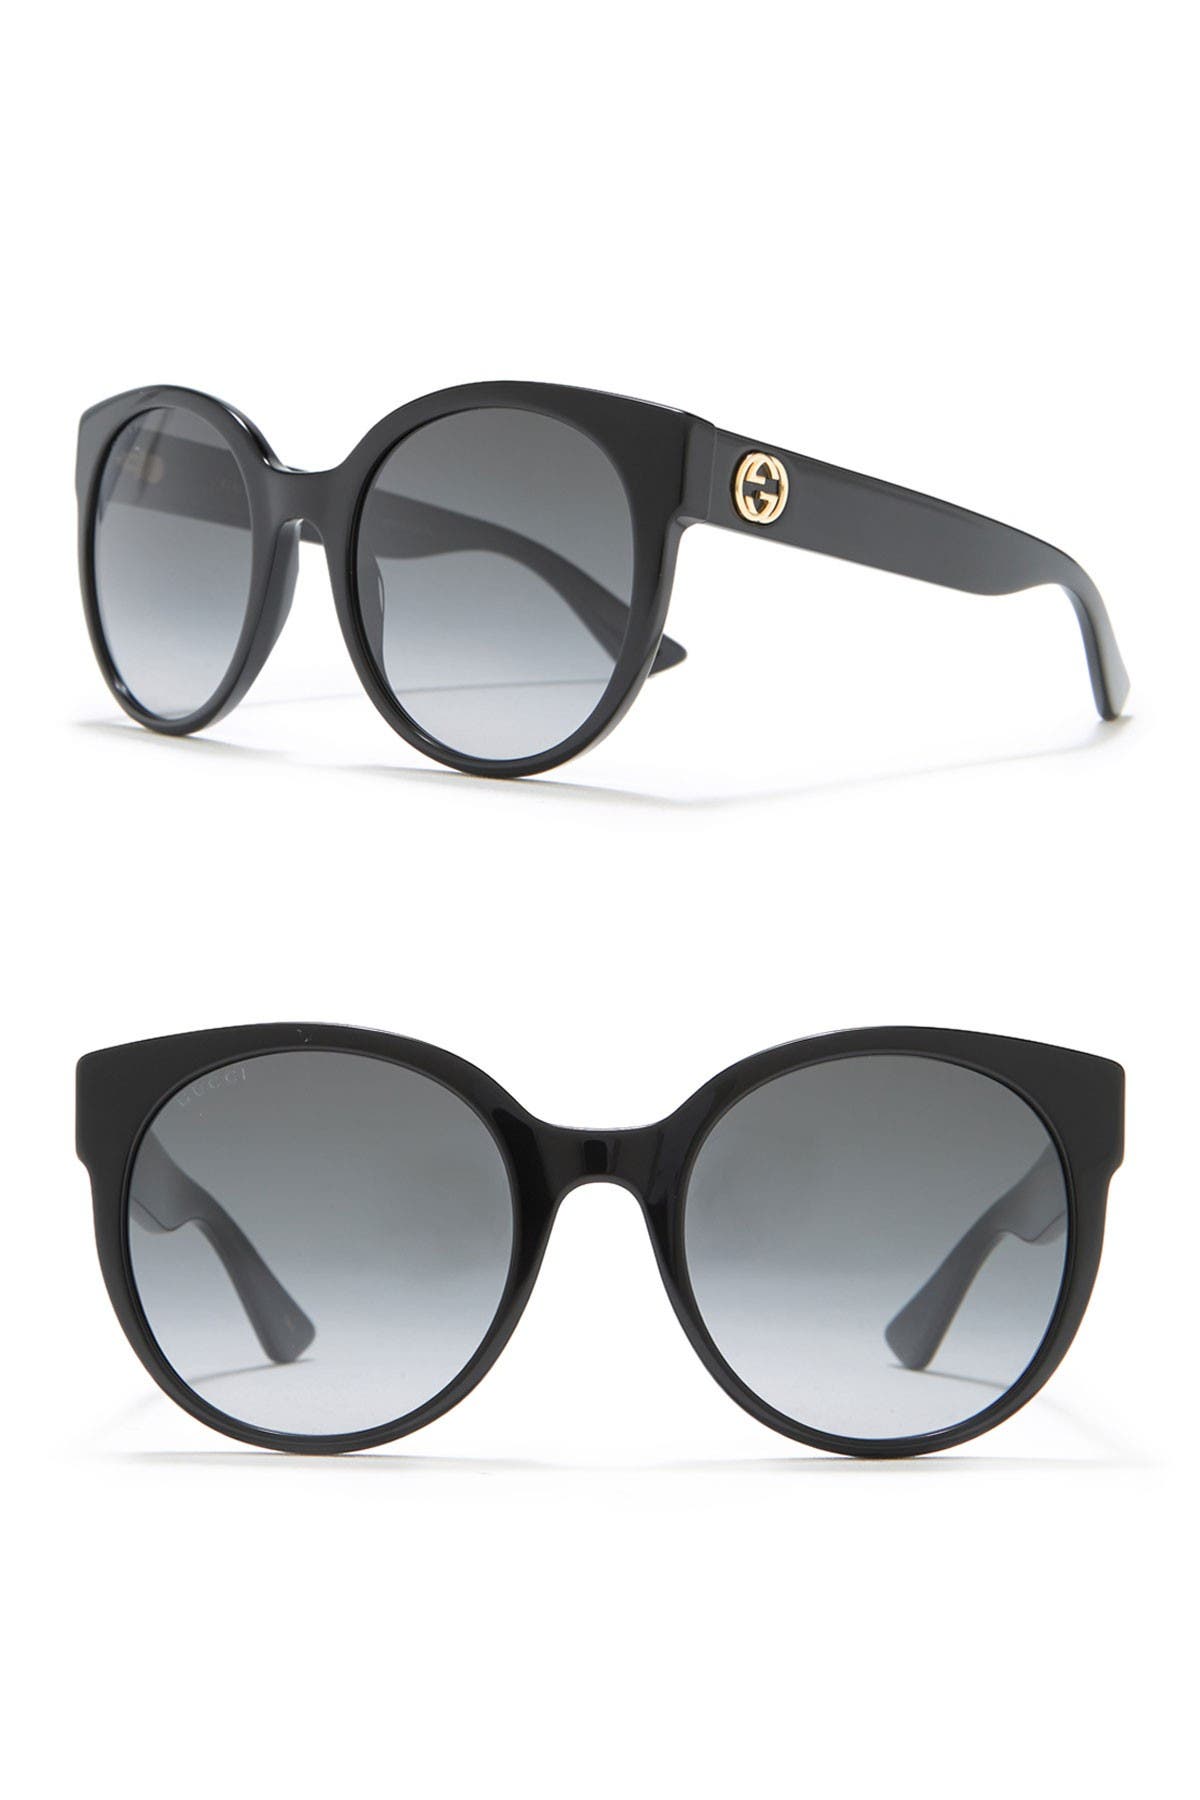 gucci 54mm cat eye sunglasses